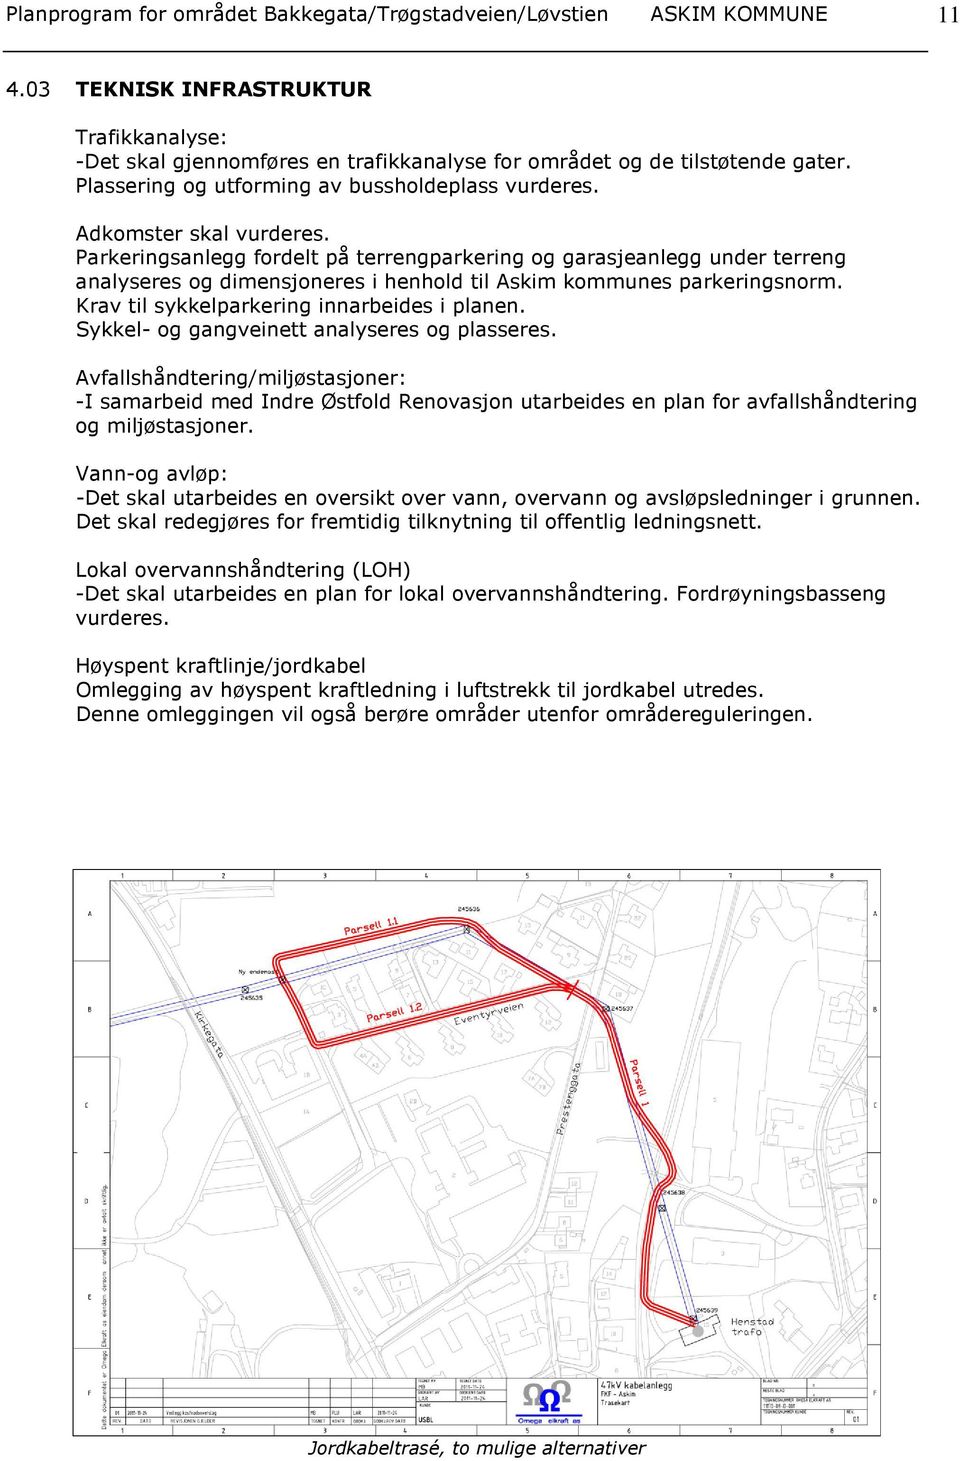 Parkeringsanlegg fordelt på terrengparkering og garasjeanlegg under terreng analyseres og dimensjoneres i henhold til Askim kommunes parkeringsnorm. Krav til sykkelparkering innarbeides i planen.